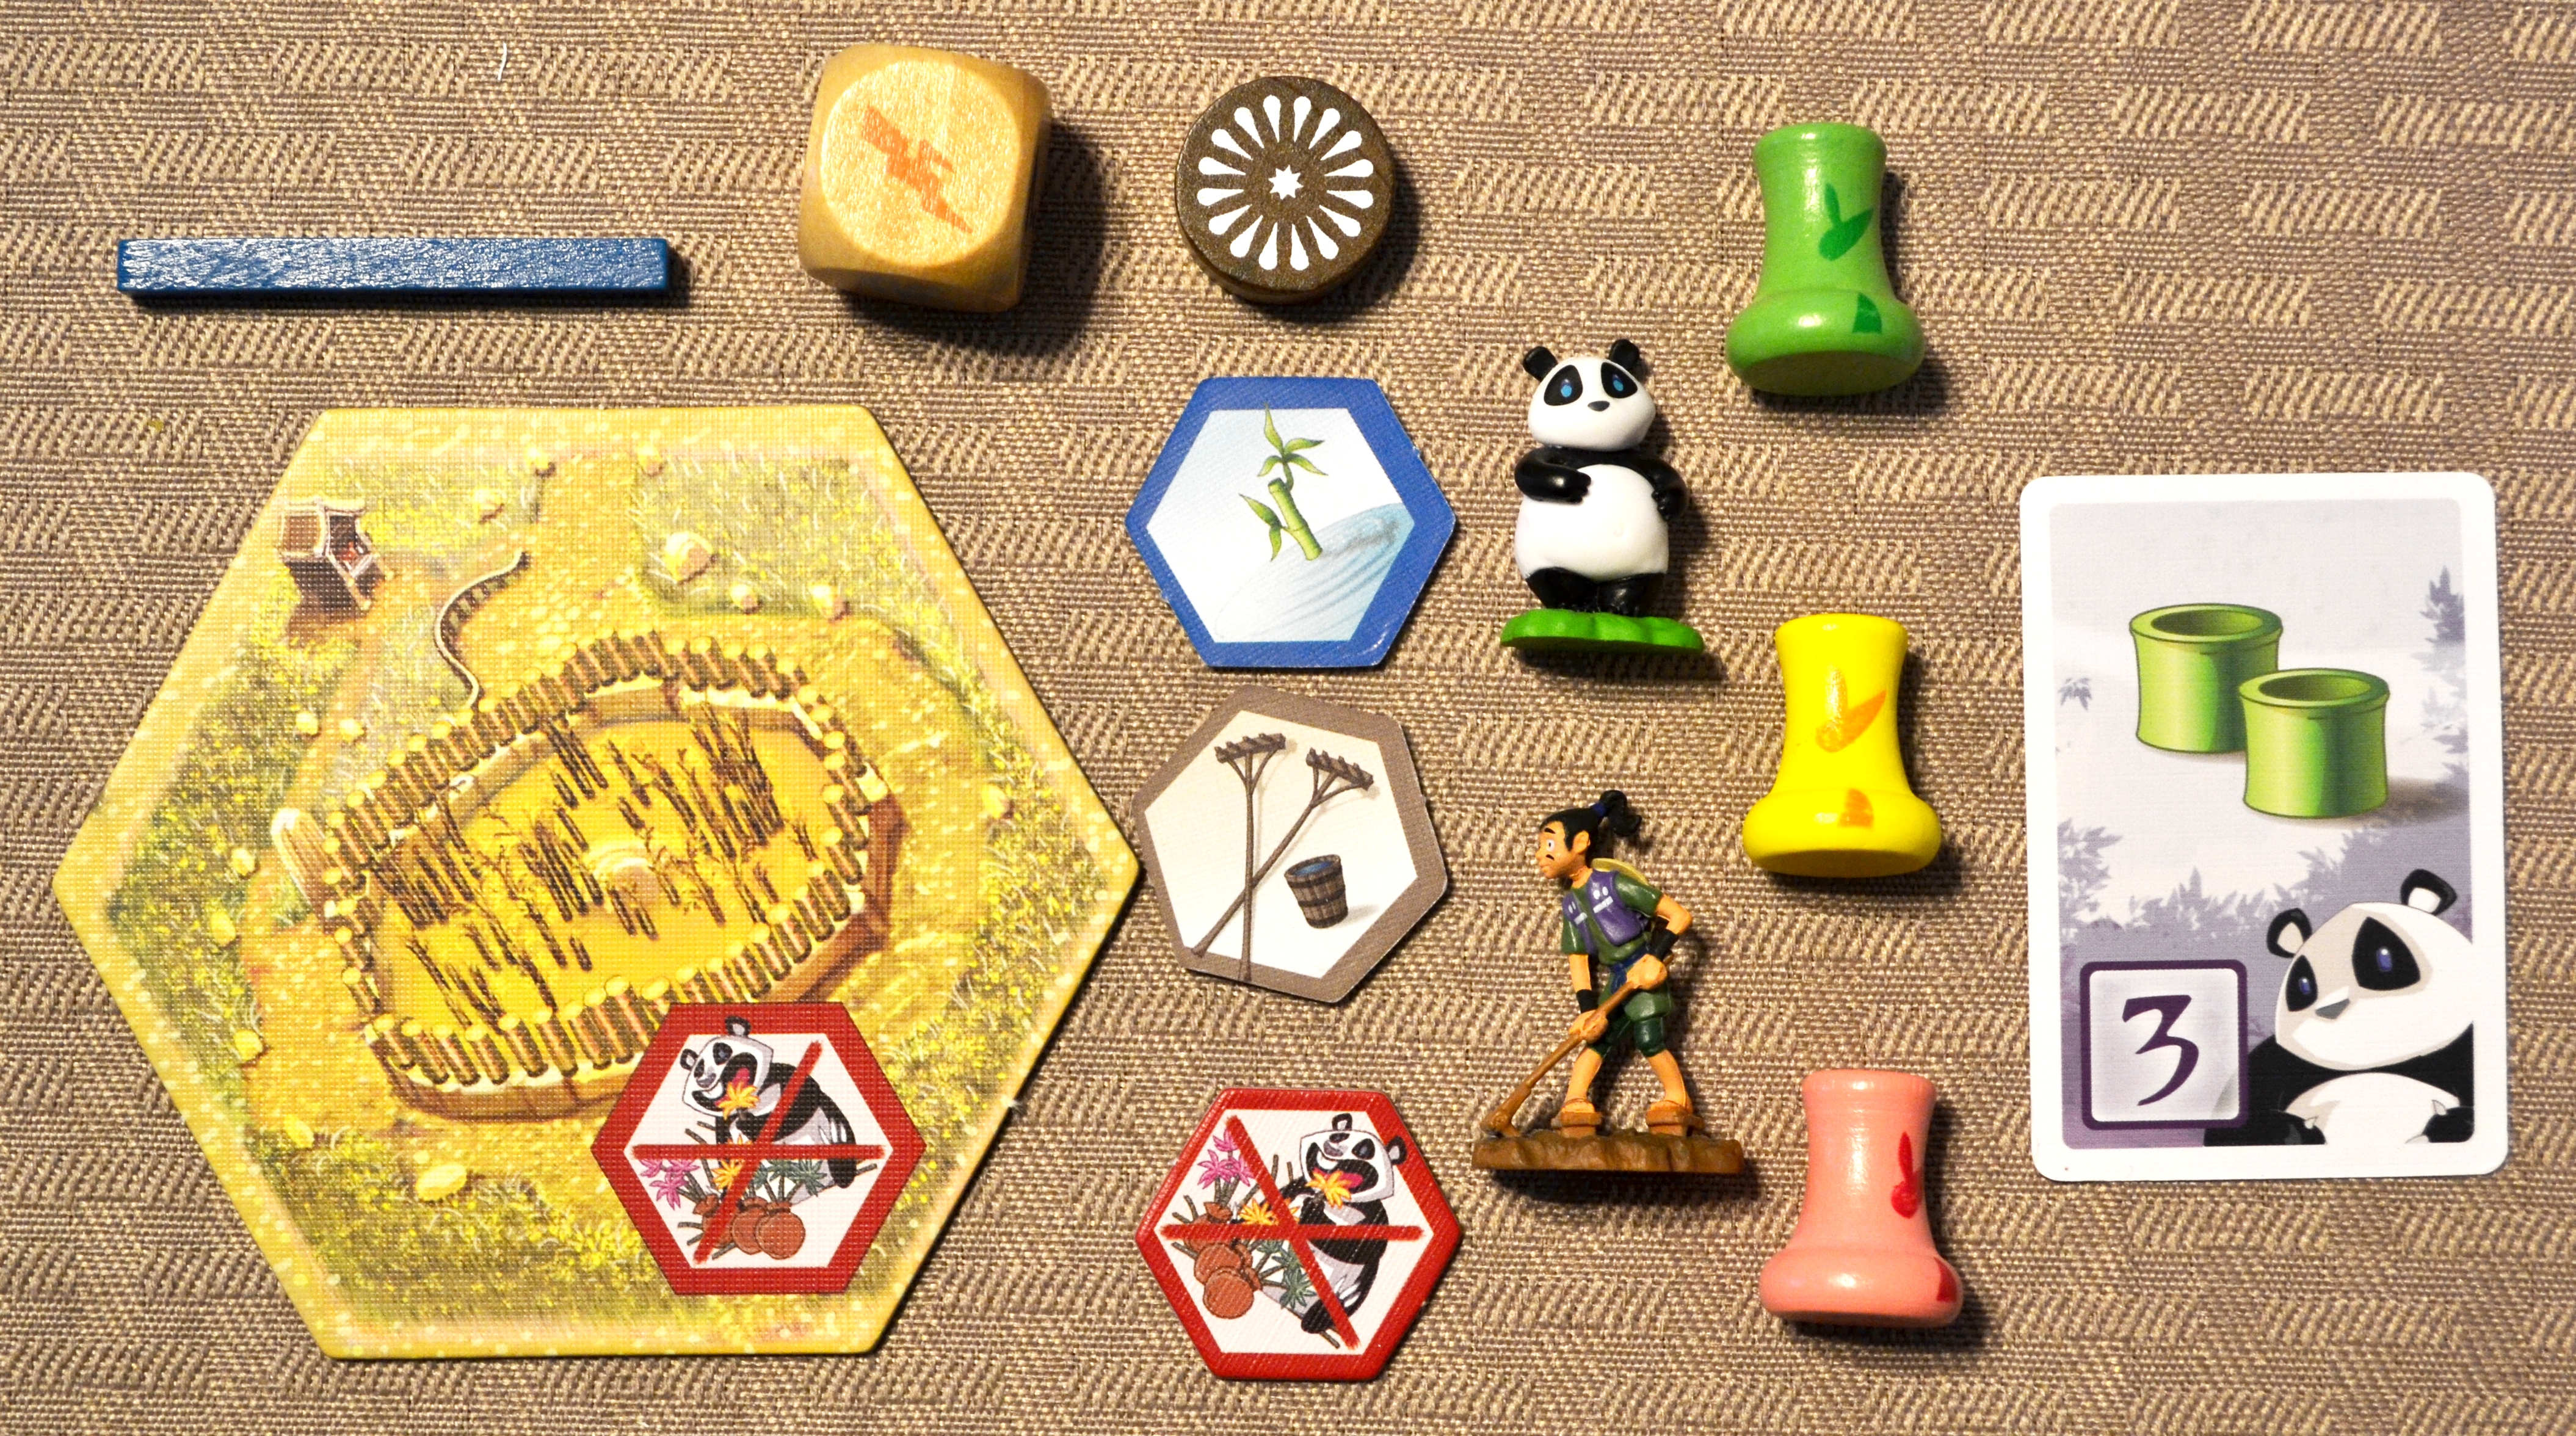 Takenoko: the Board Game